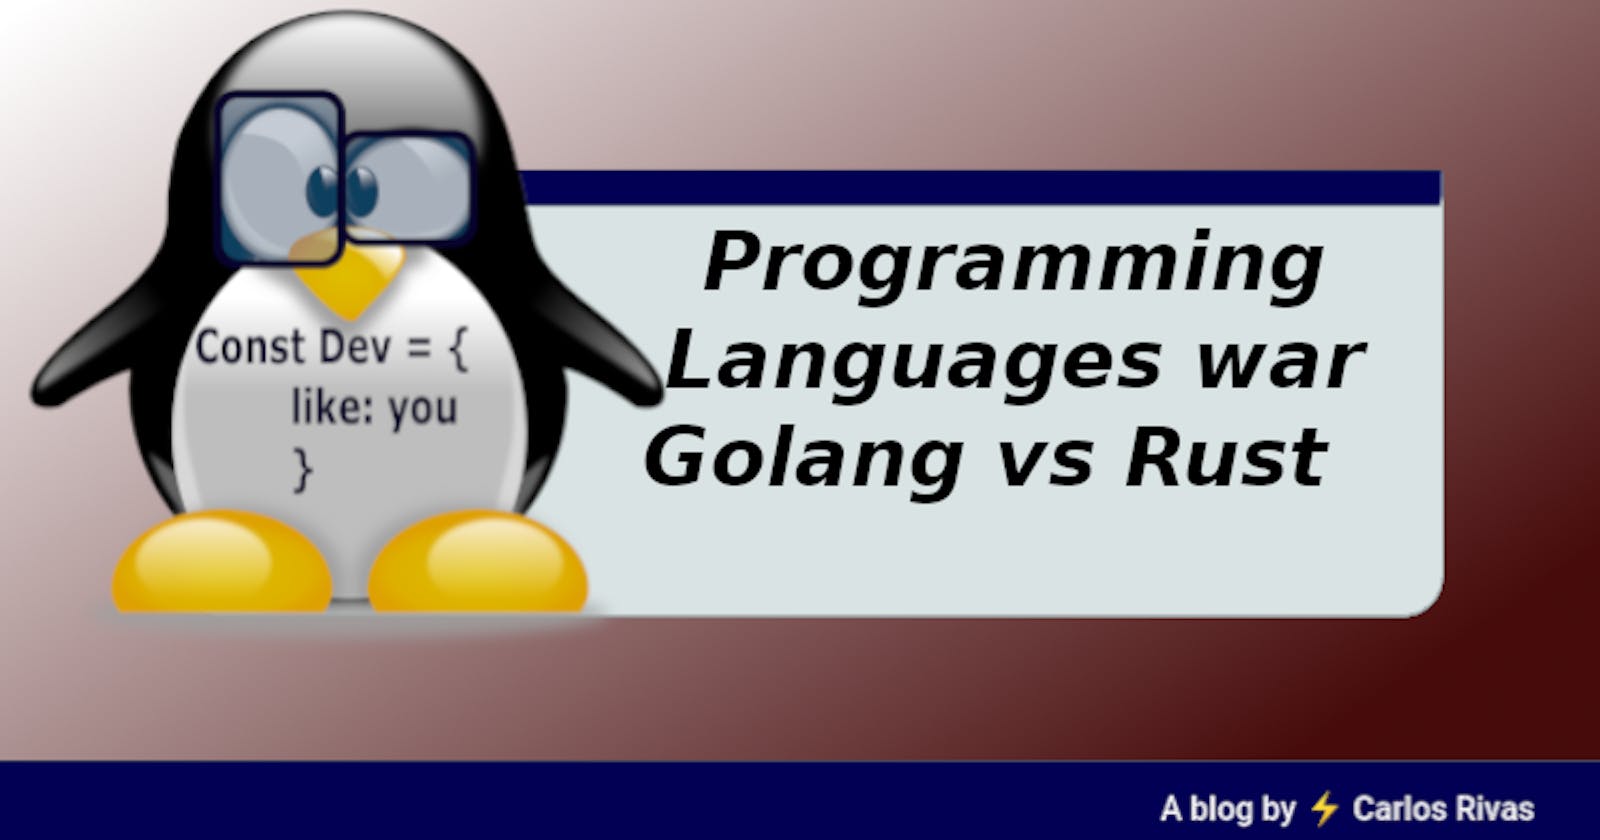 Programming Languages war
Golang vs Rust